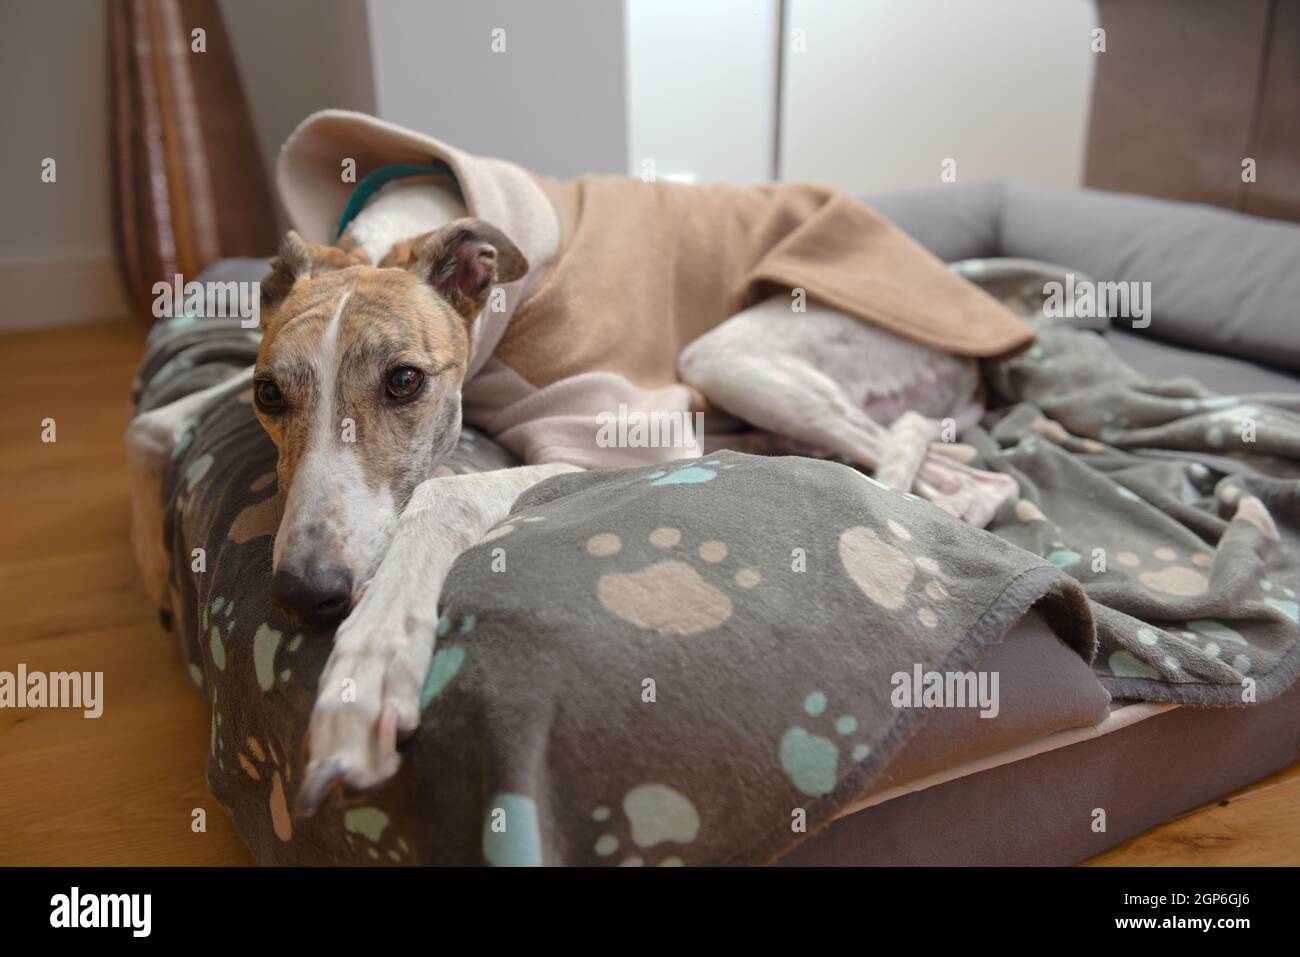 Weiß und braun großer Hund Windhund ruht den Kopf und schaut von ihrem Hundebett aus auf die Kamera. Paw gemusterte Decke und dicker Fleece Pullover für Wärme Stockfoto